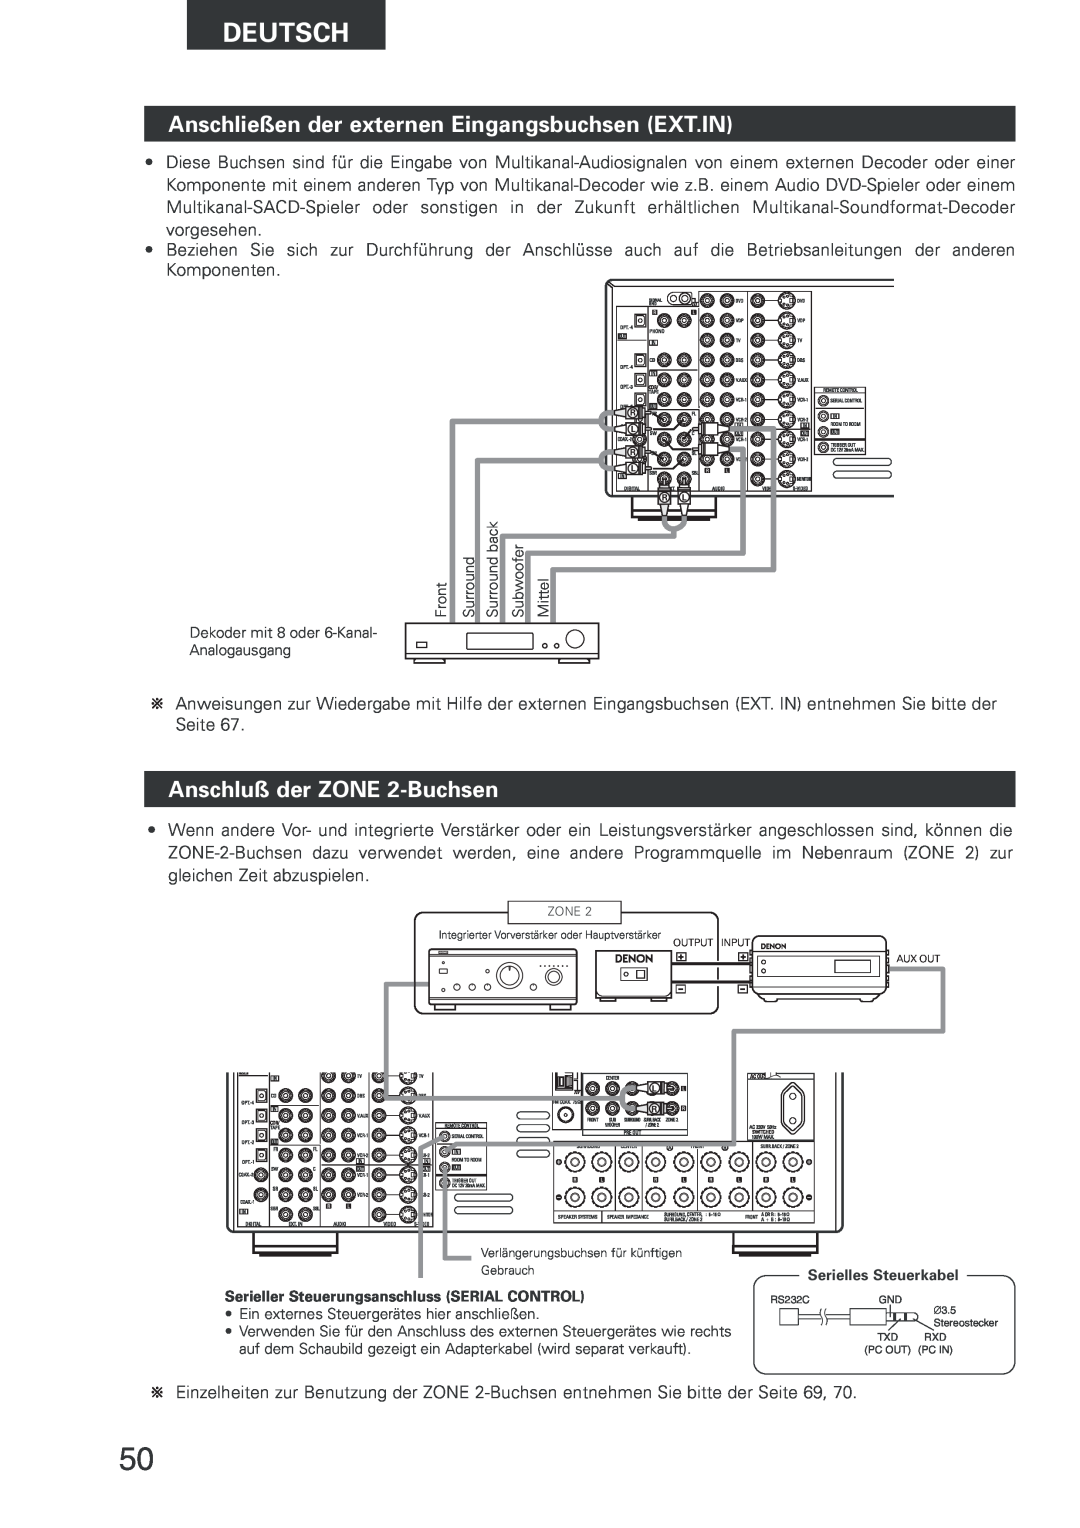 Denon AVR-2803 manual Anschließen der externen Eingangsbuchsen EXT.IN, Anschluß der ZONE 2-Buchsen, Deutsch 